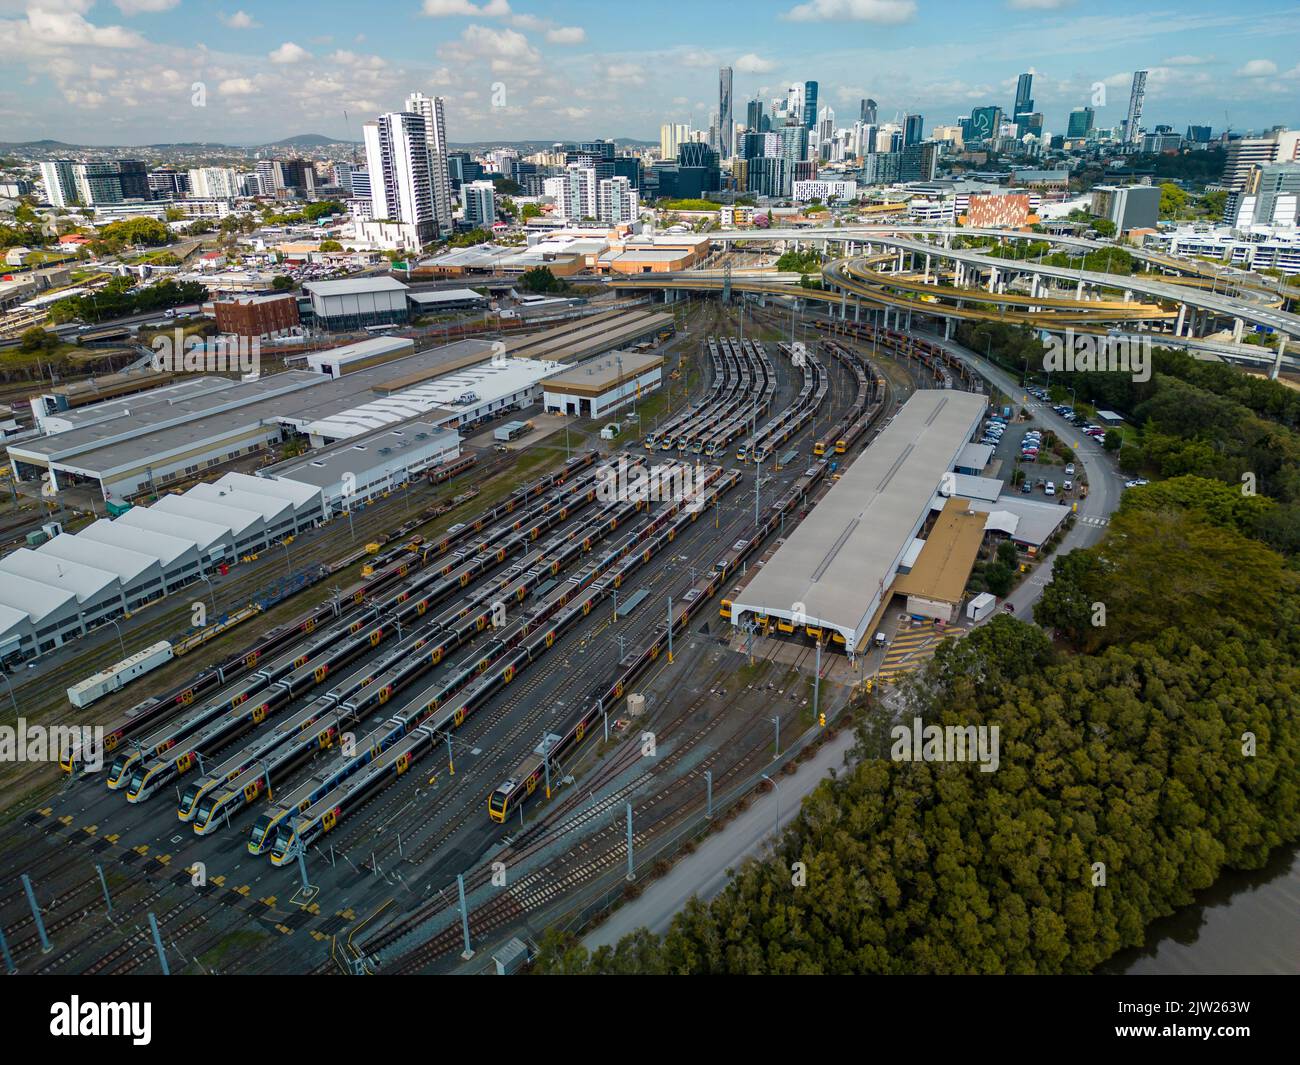 Vue aérienne du dépôt de trains à Brisbane, Australie Banque D'Images